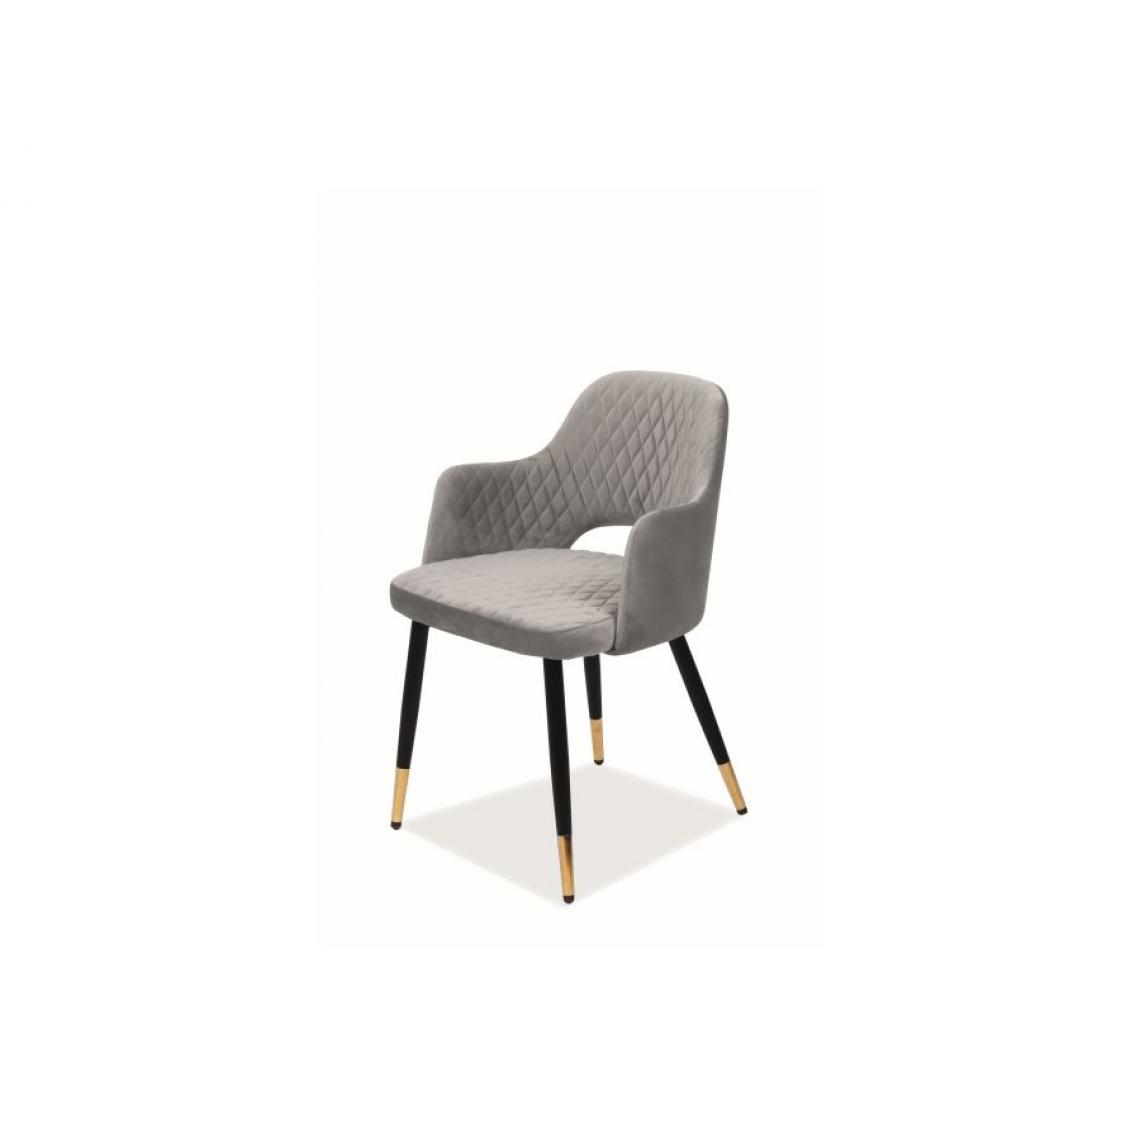 Hucoco - FRANGO | Chaise de salle à manger avec accoudoirs | Dimensions : 82x55x45 cm | Rembourrage tissu velouté | Style scandinave - Gris - Chaises